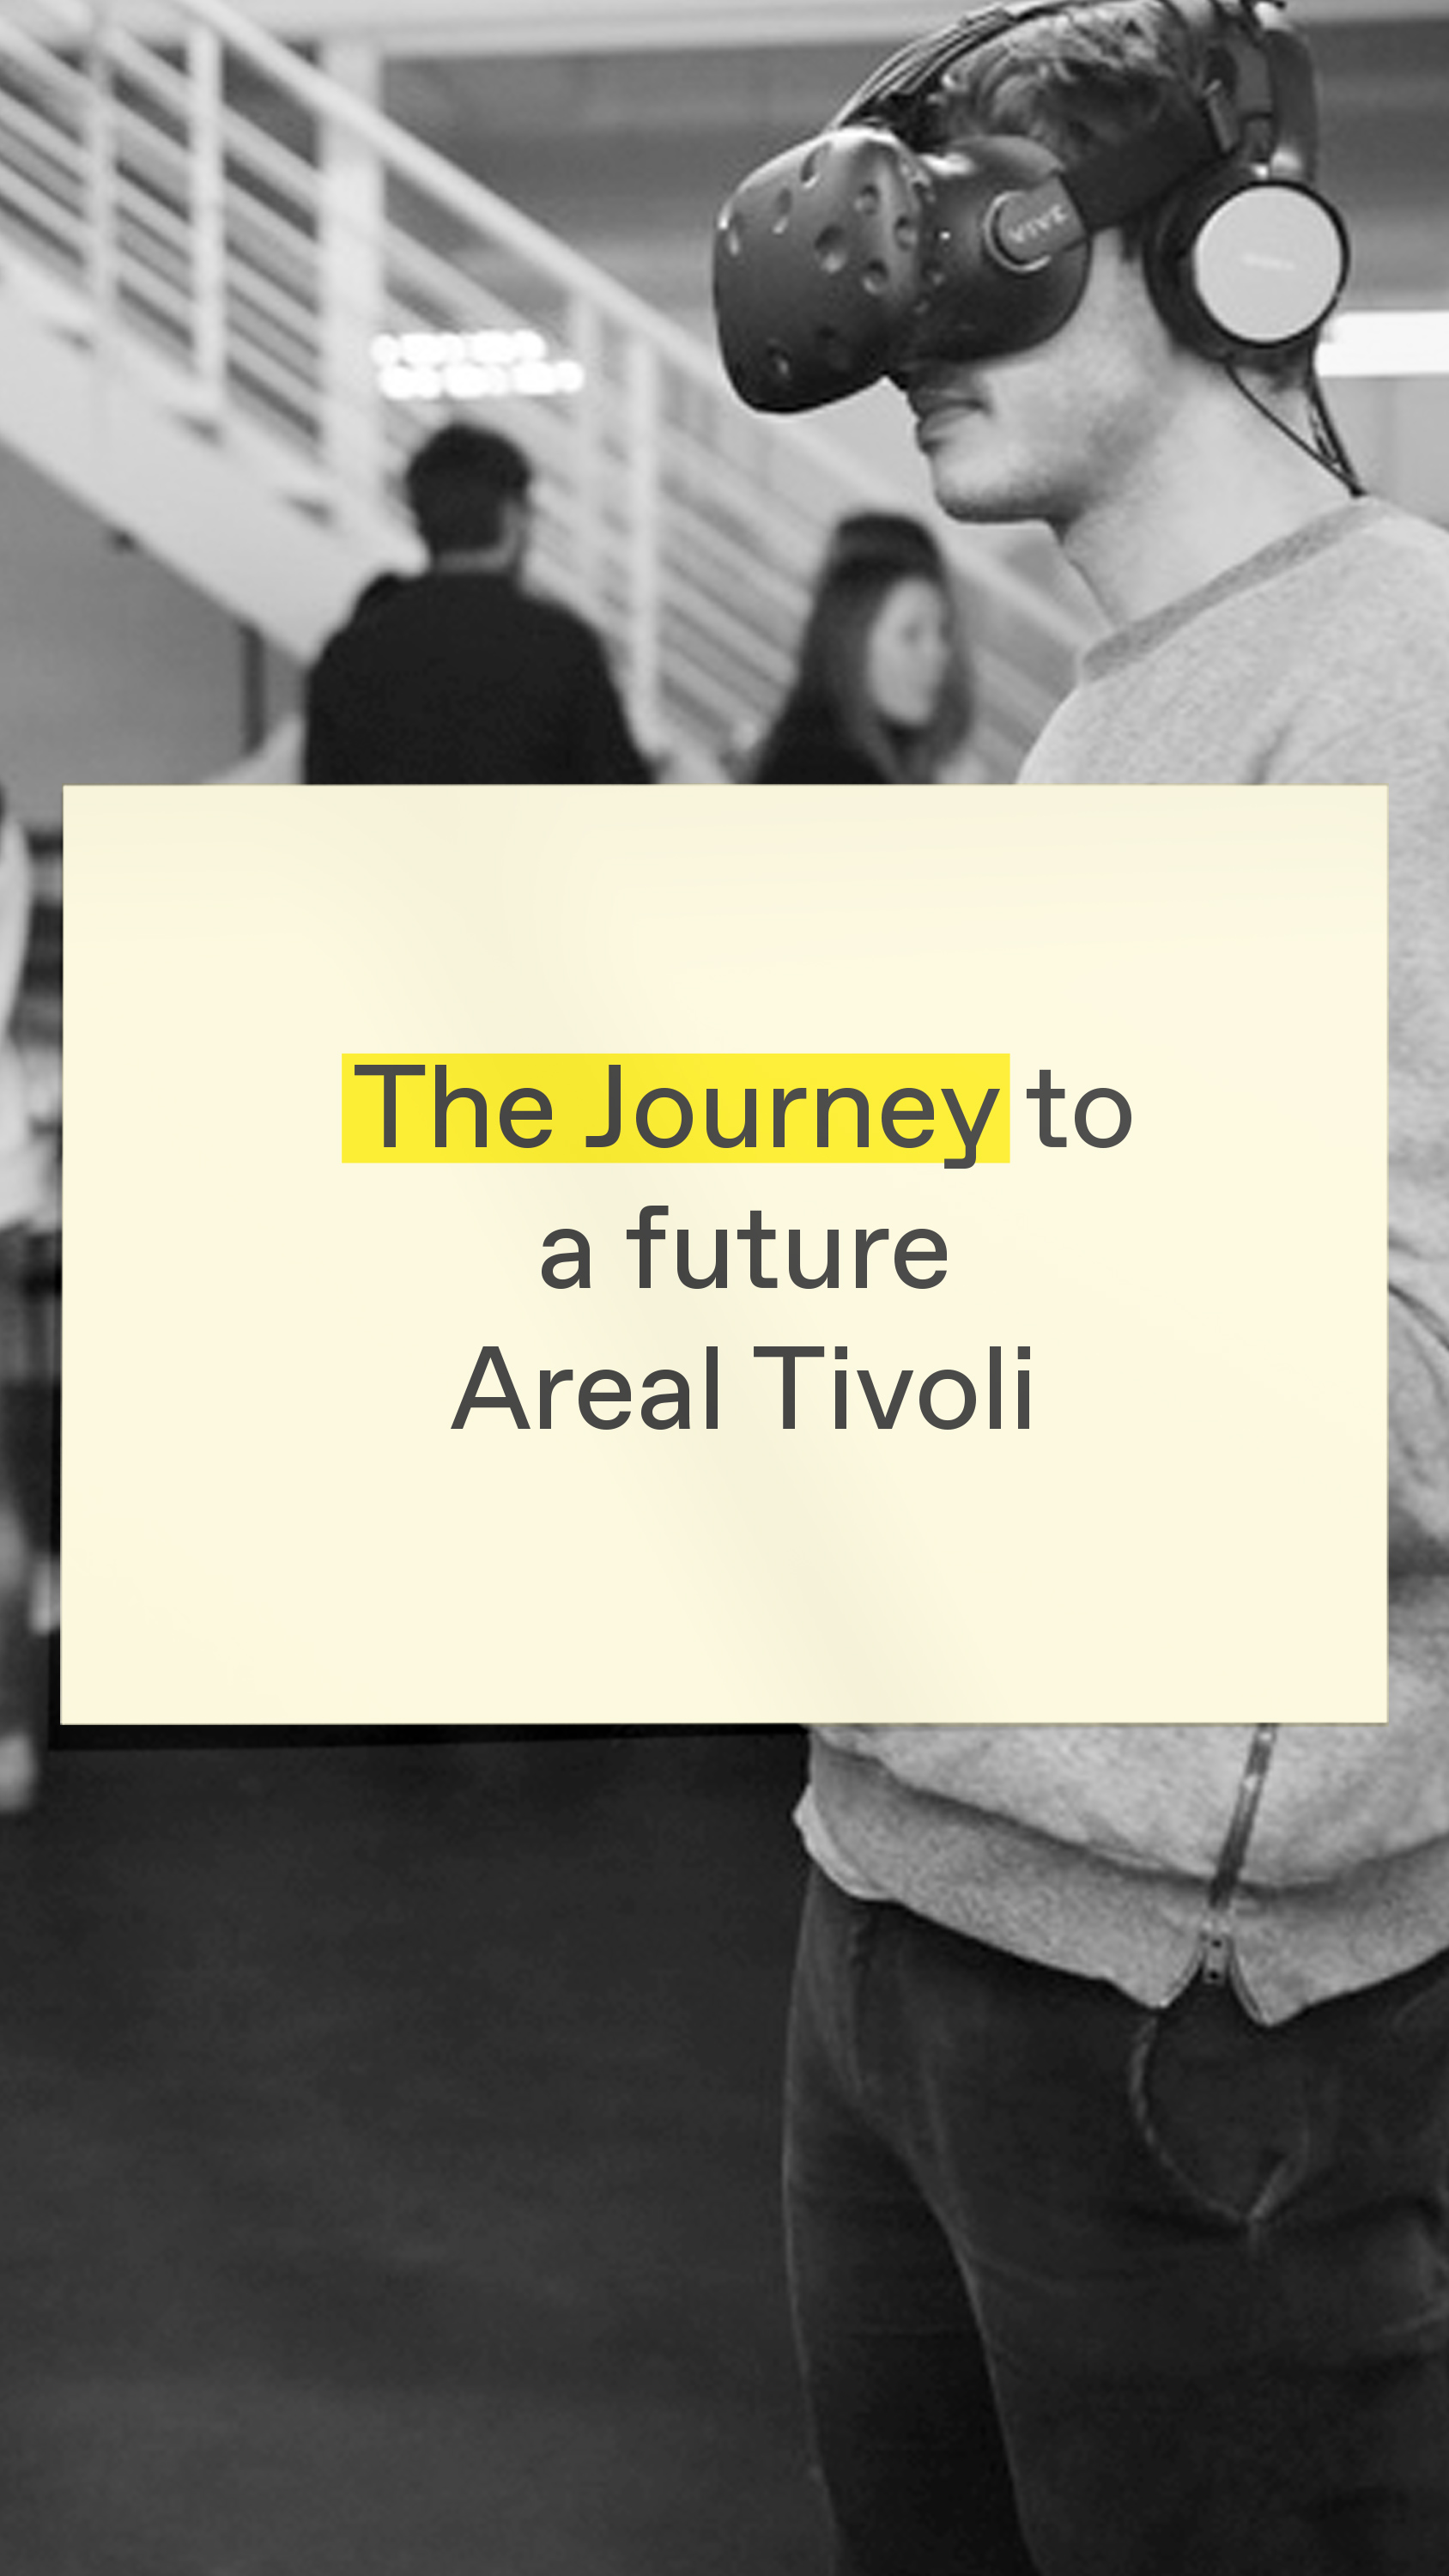 Gemeinsam mit der Credit Suisse Asset Management haben wir das Konzept und Format für das Einkaufszentrum Areal Tivoli positioniert.